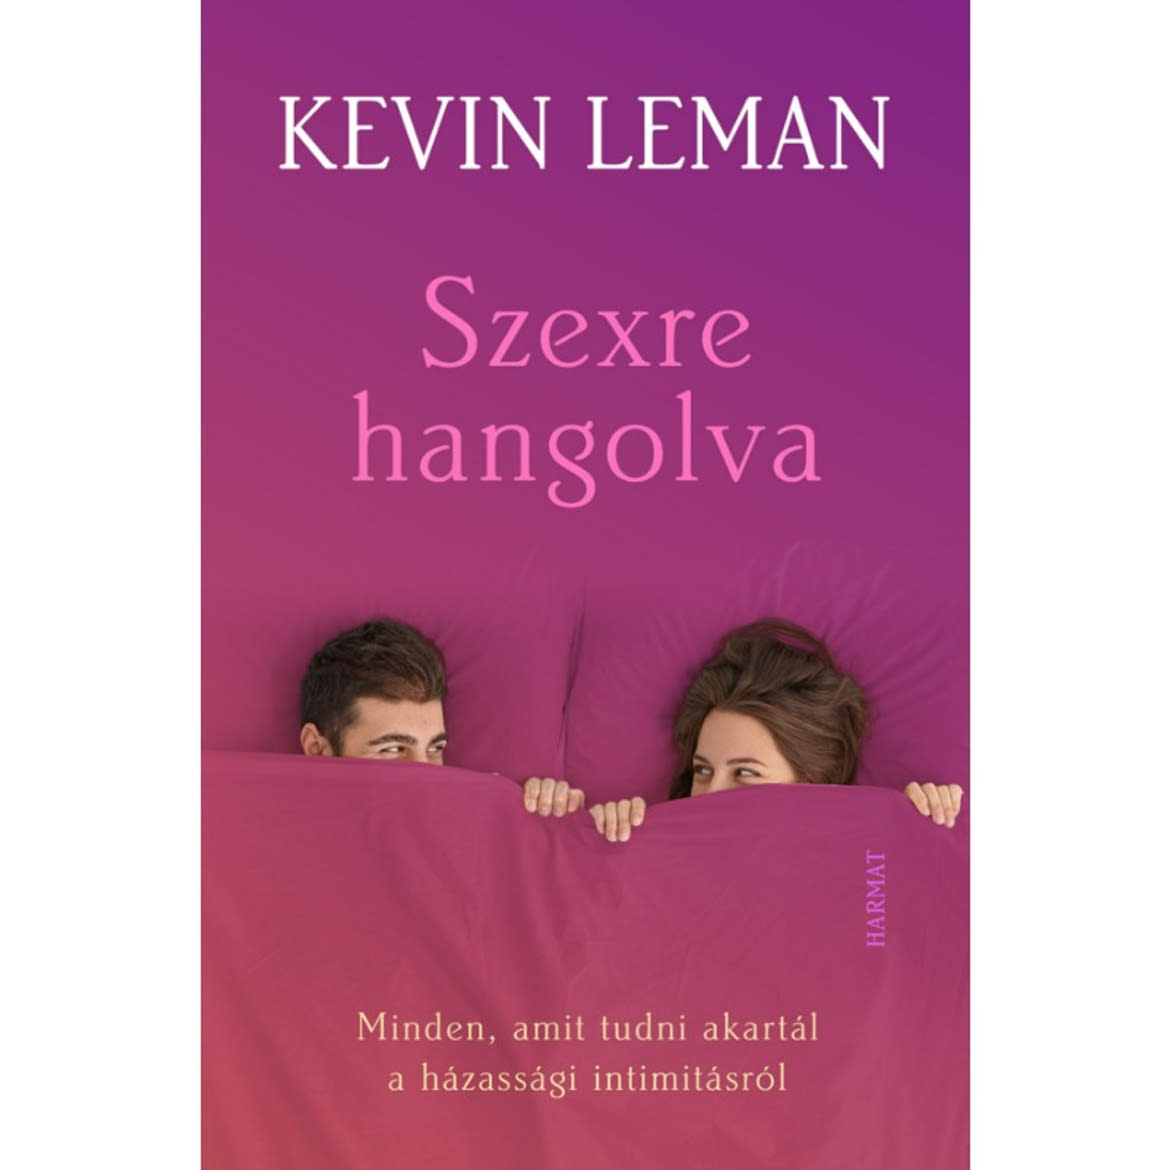 Könyv: Kevin Leman: Szexre hangolva